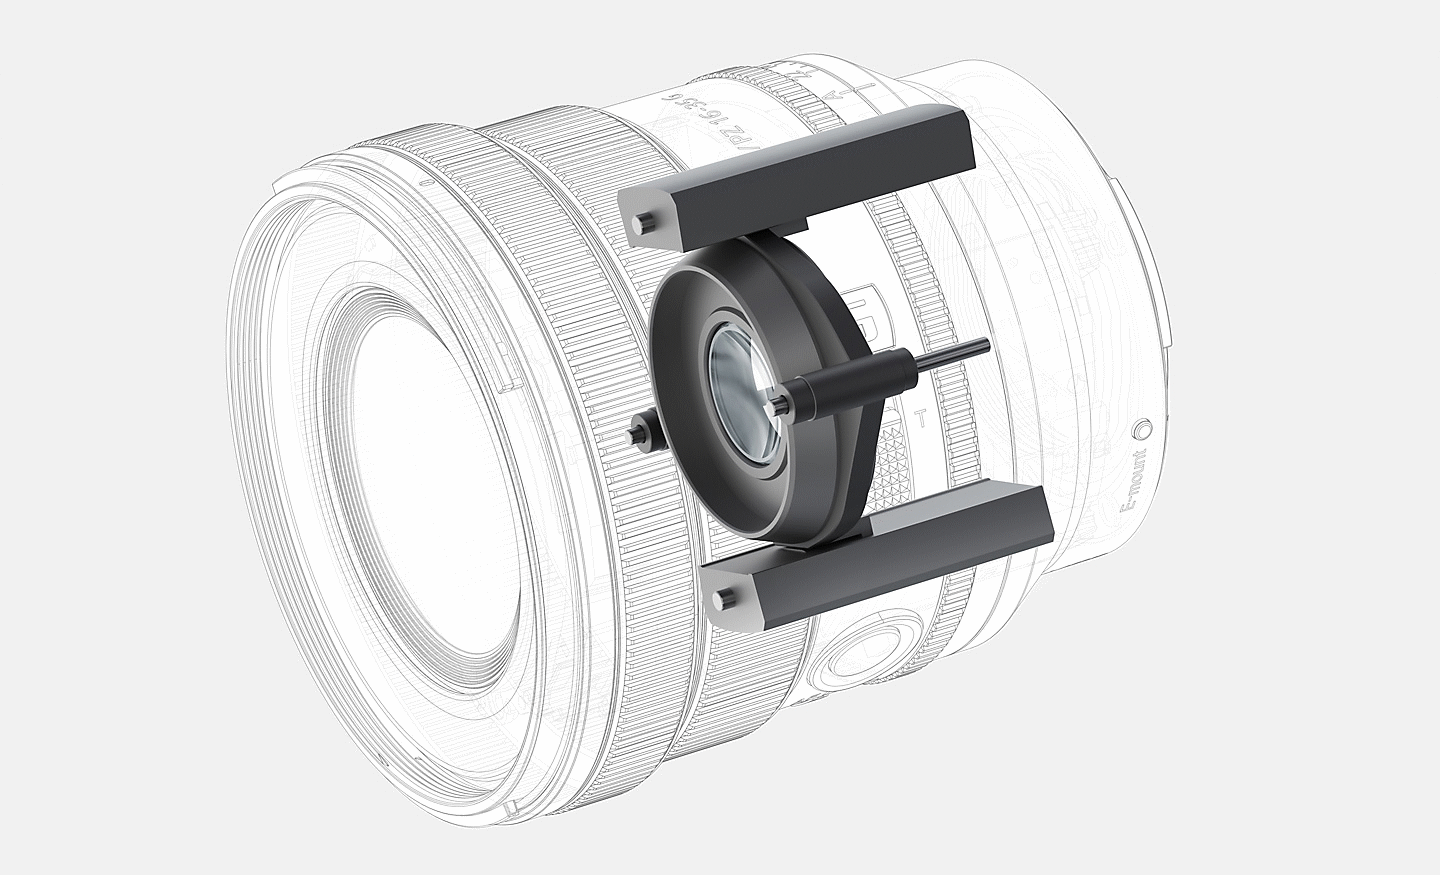 Illustrasjon av den lineære XD-motorkonstruksjonen for autofokussystemet